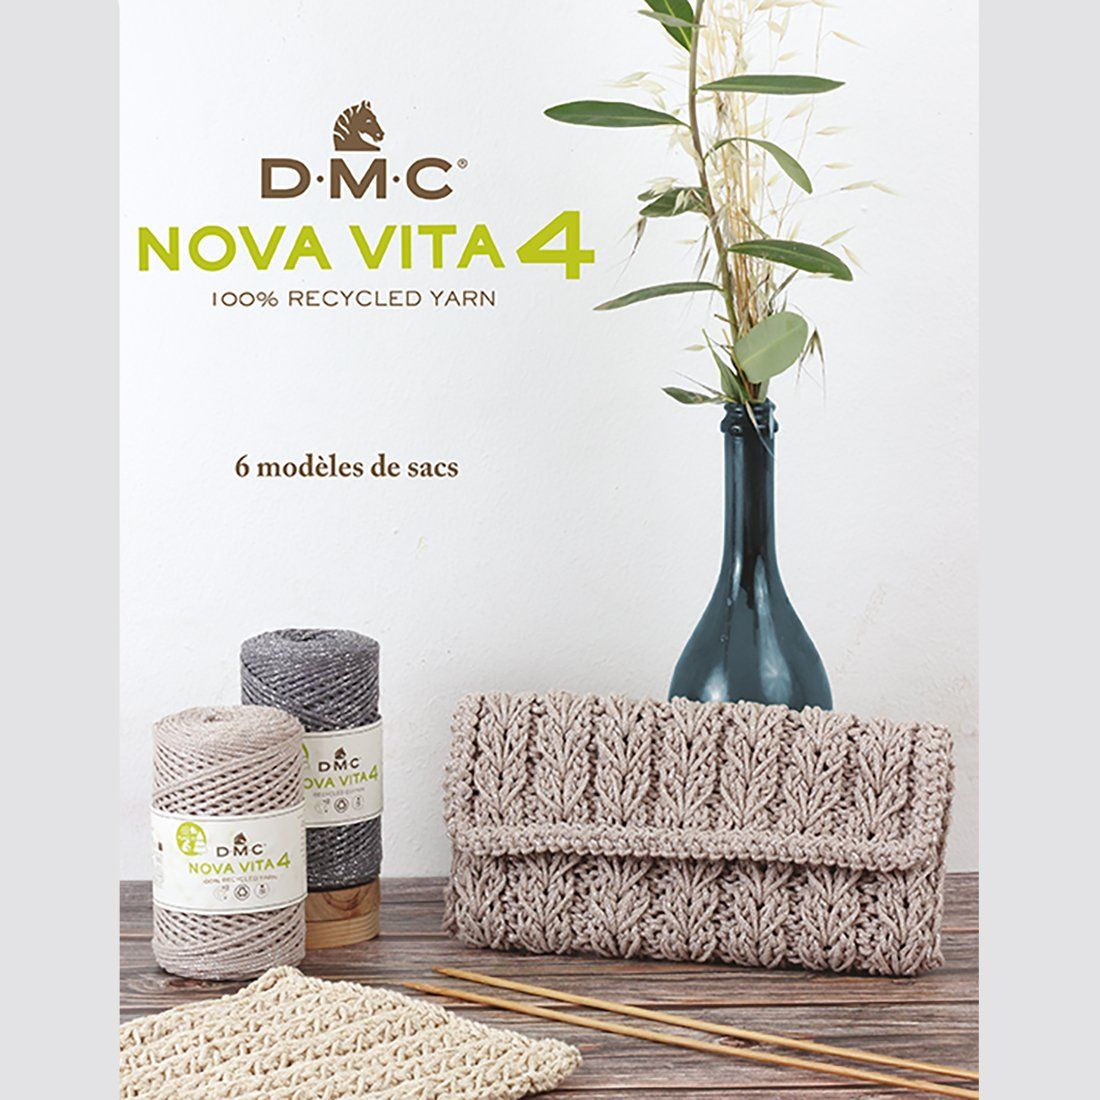 Catalogue DMC - Nova Vita 4 - 6 modèles de sacs